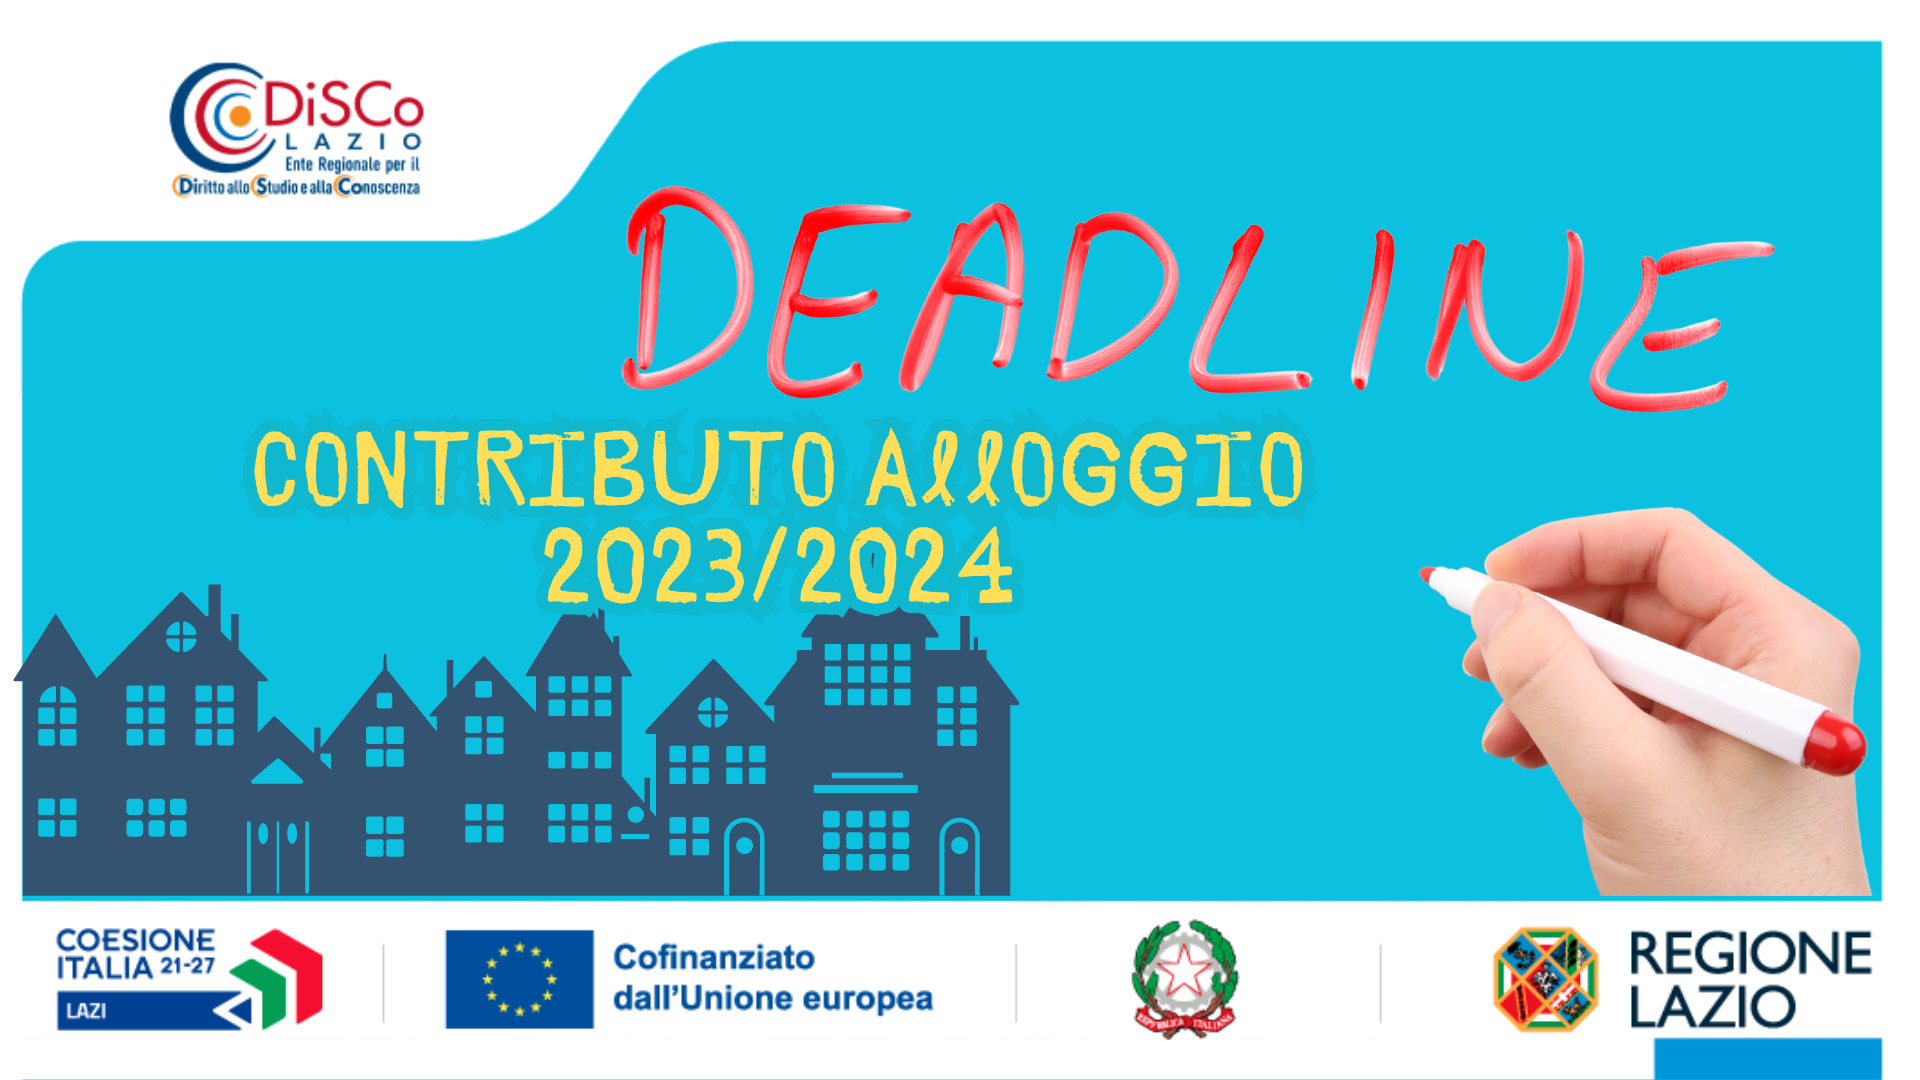 illustrazione deadline contributo alloggio 2023/2024